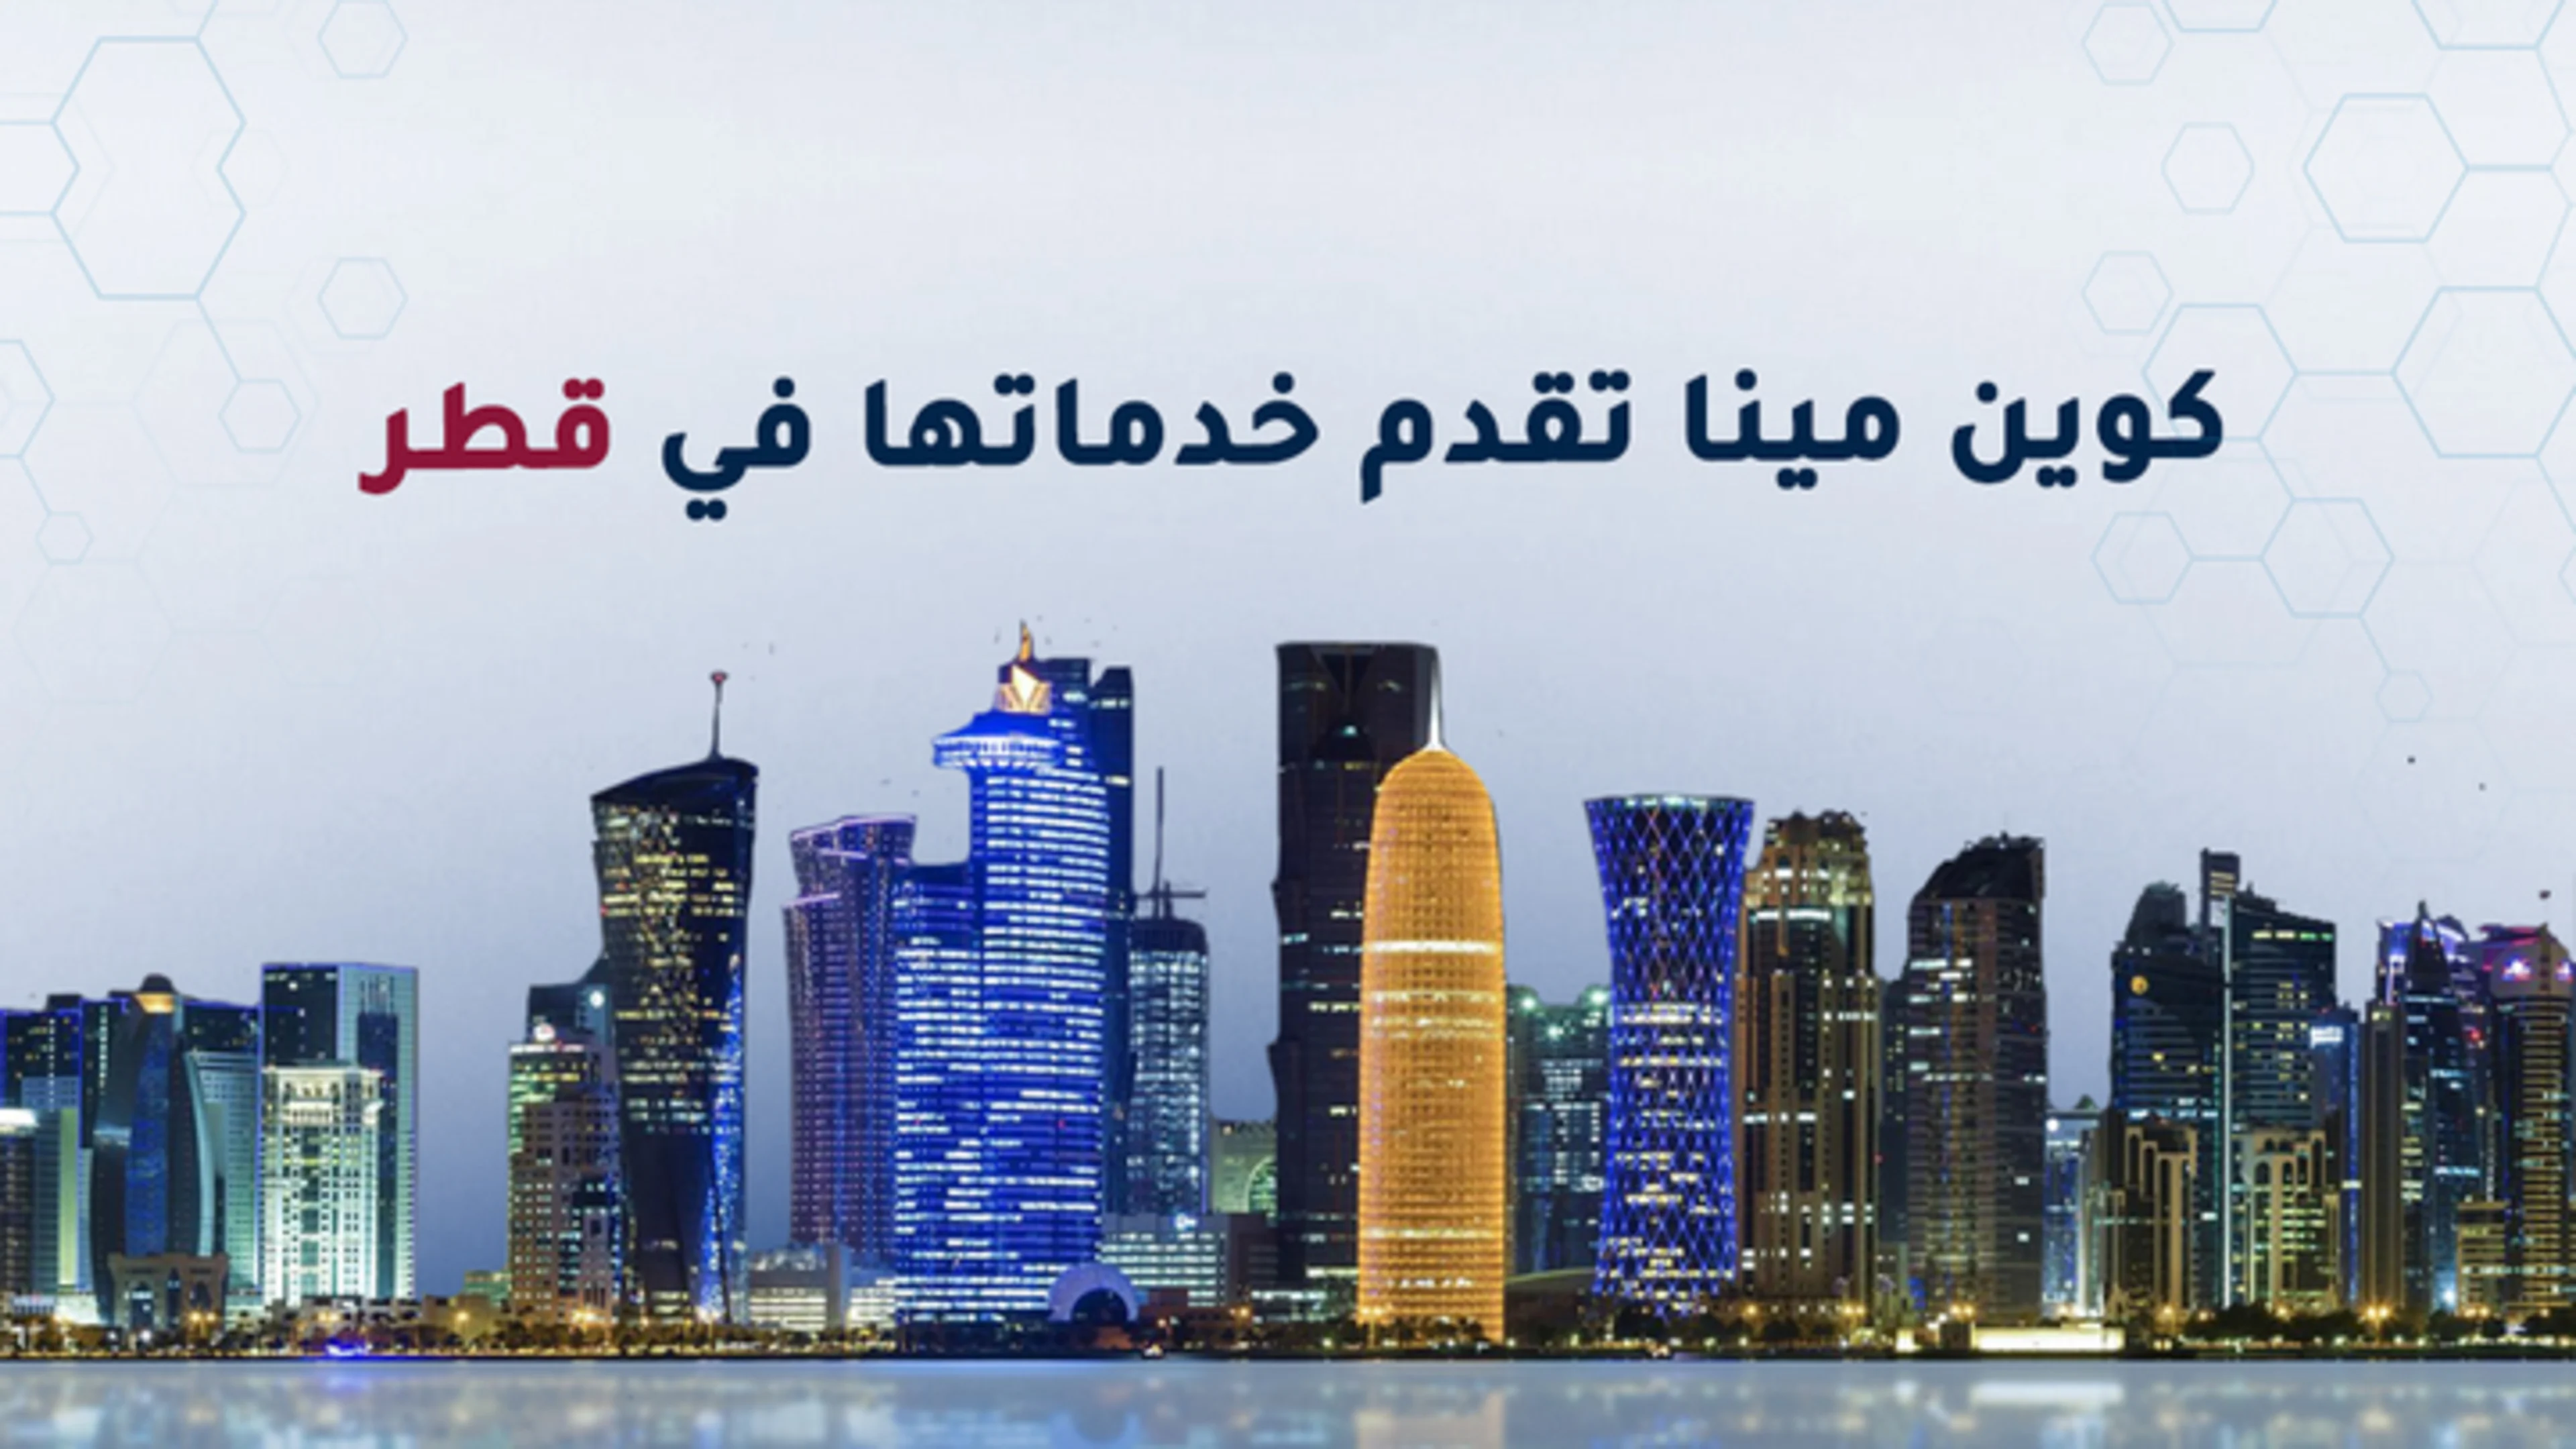 كوين مينا تصبح أول منصة تقدم خدمة تداول العملات الرقمية في قطر